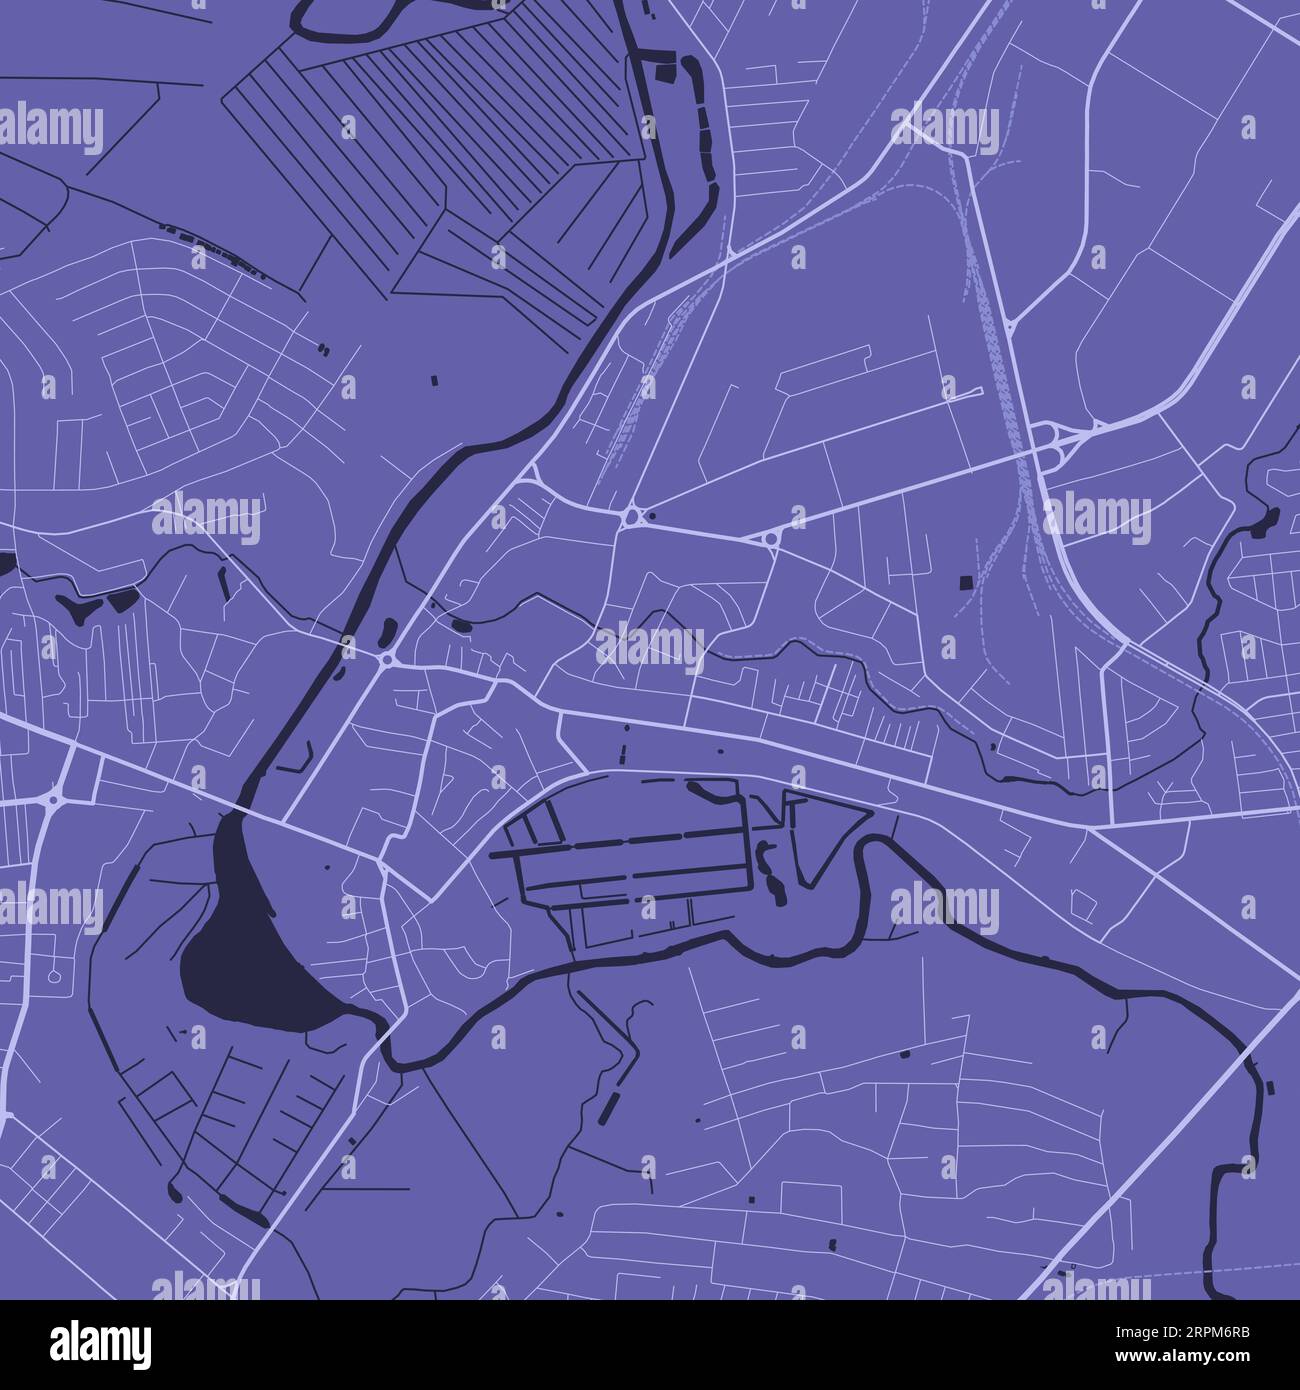 Hintergrund Lutsk Karte, Ukraine, lila Stadtplakat. Vektorkarte mit Straßen und Wasser. Breitbildformat, digitale Roadmap mit flachem Design. Stock Vektor